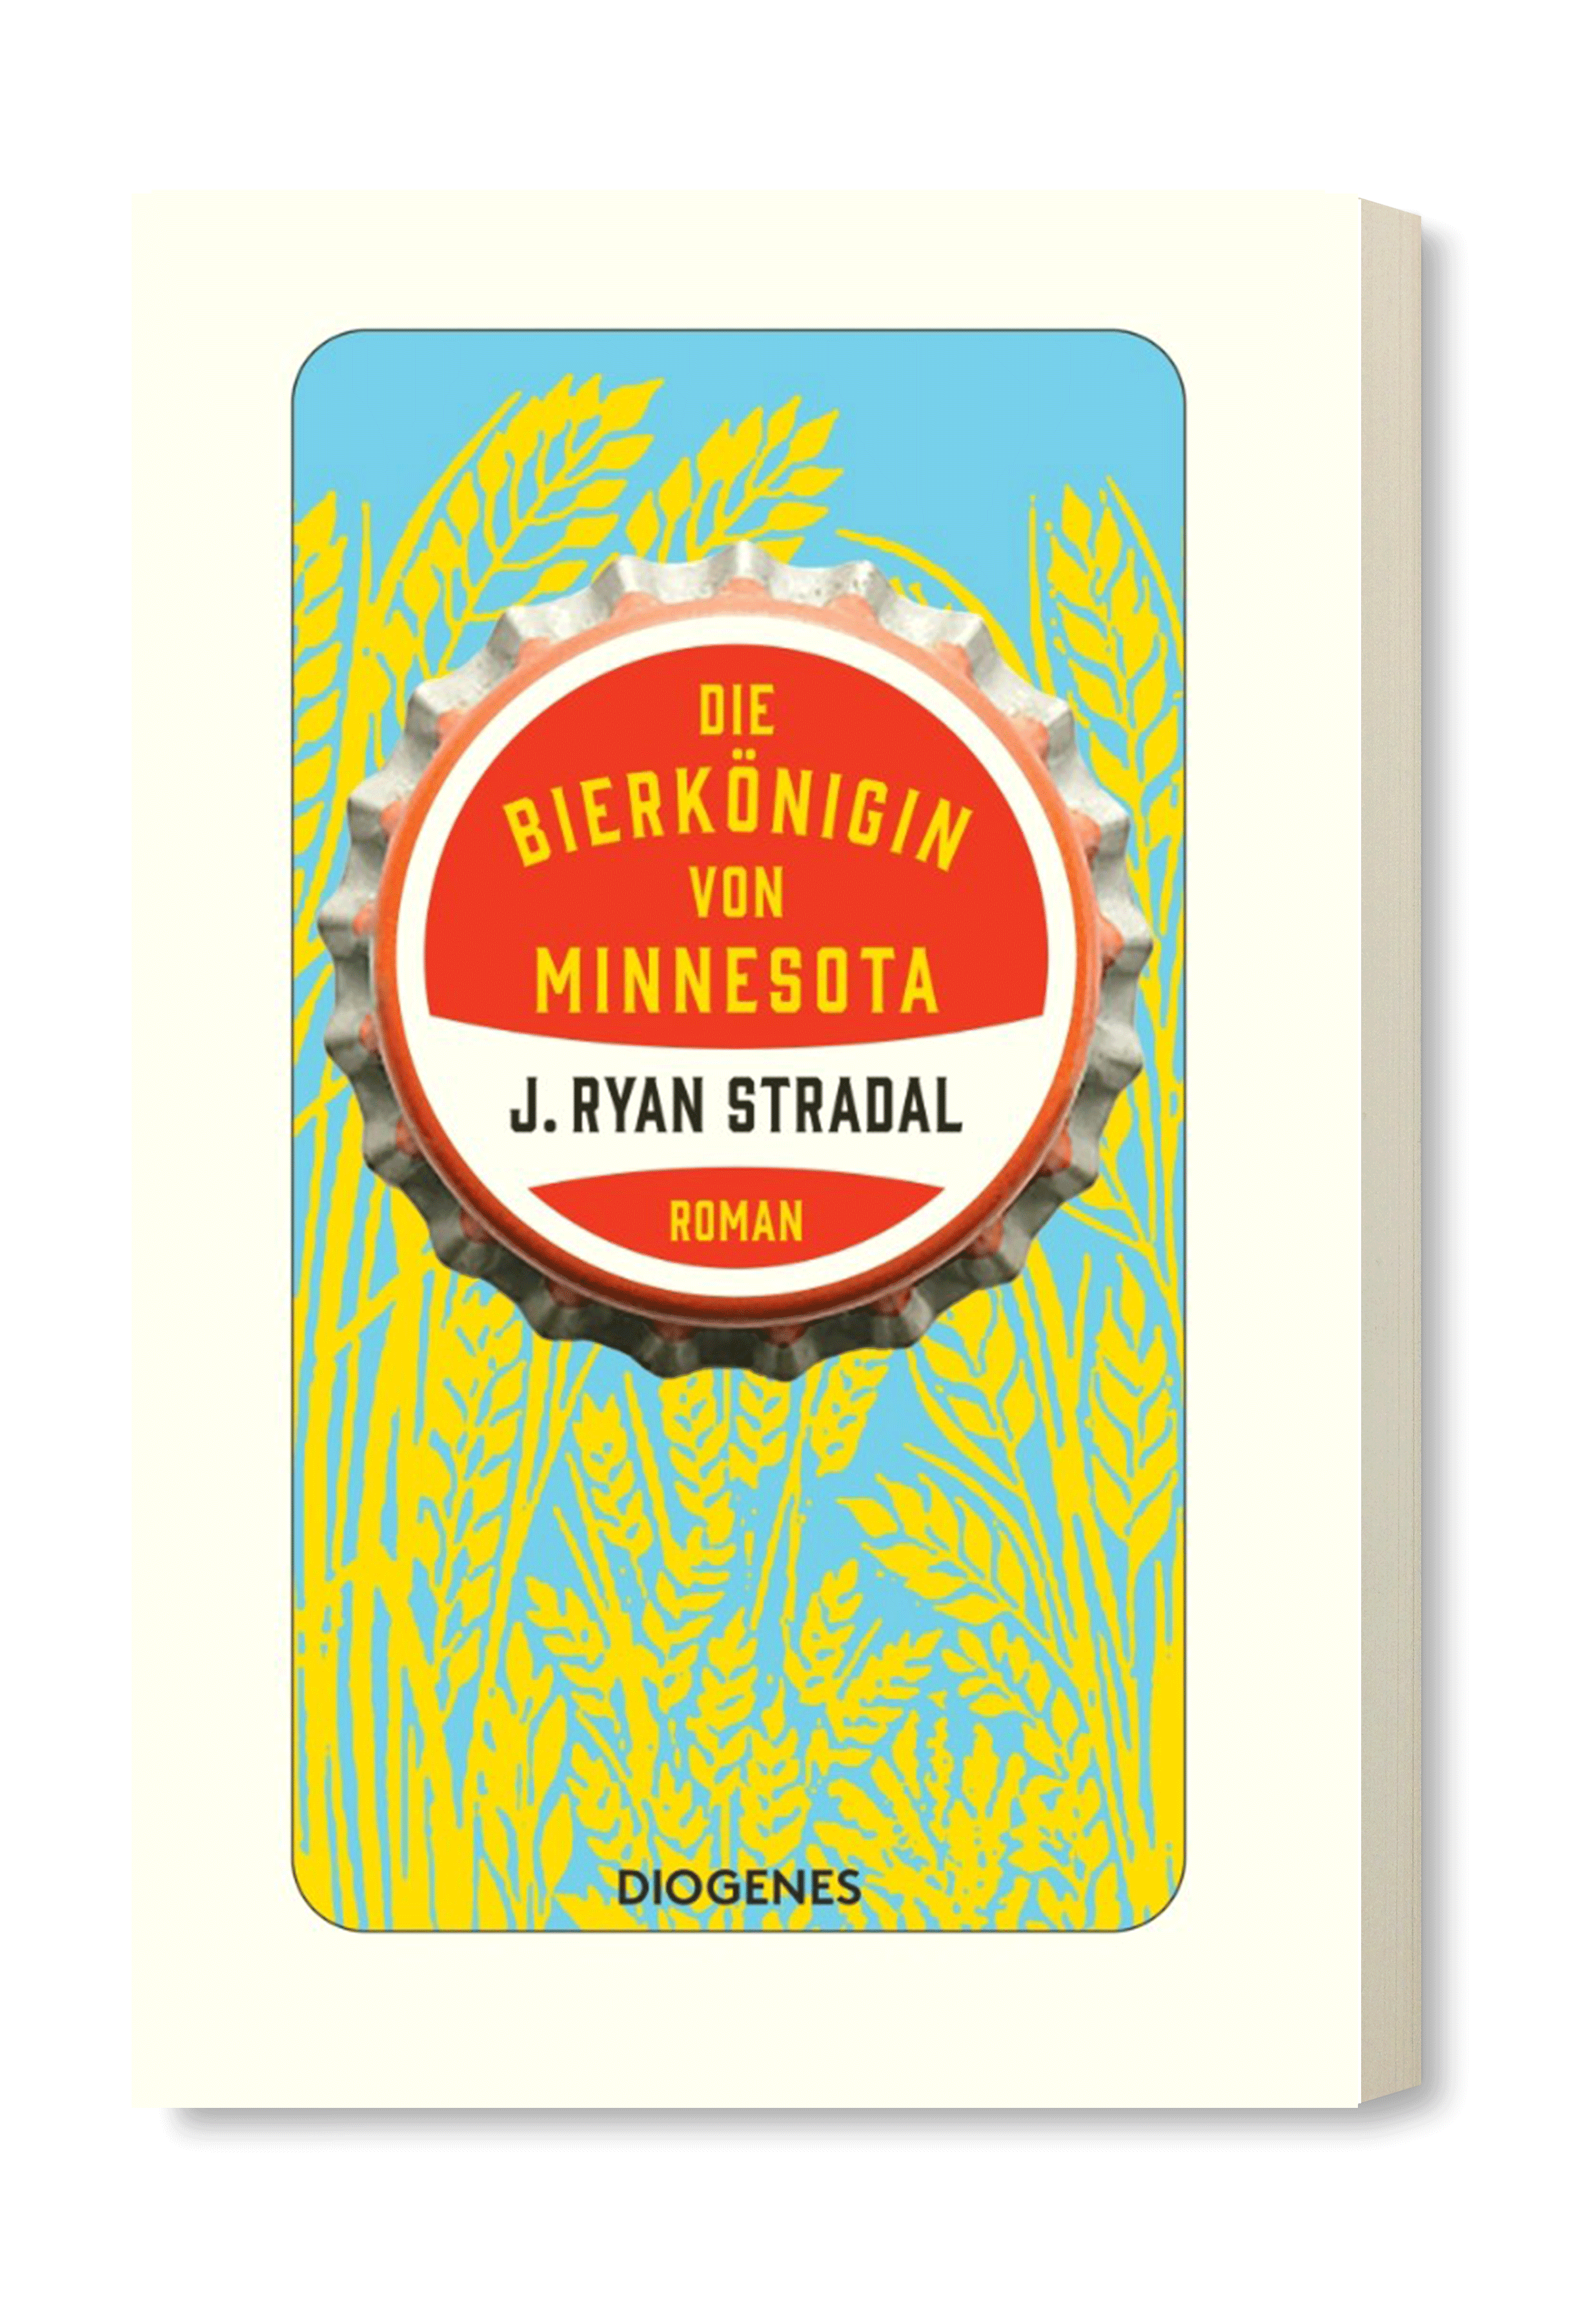 ›Die Bierkönigin von Minnesota‹ – Der neue Roman von J. Ryan Stradal